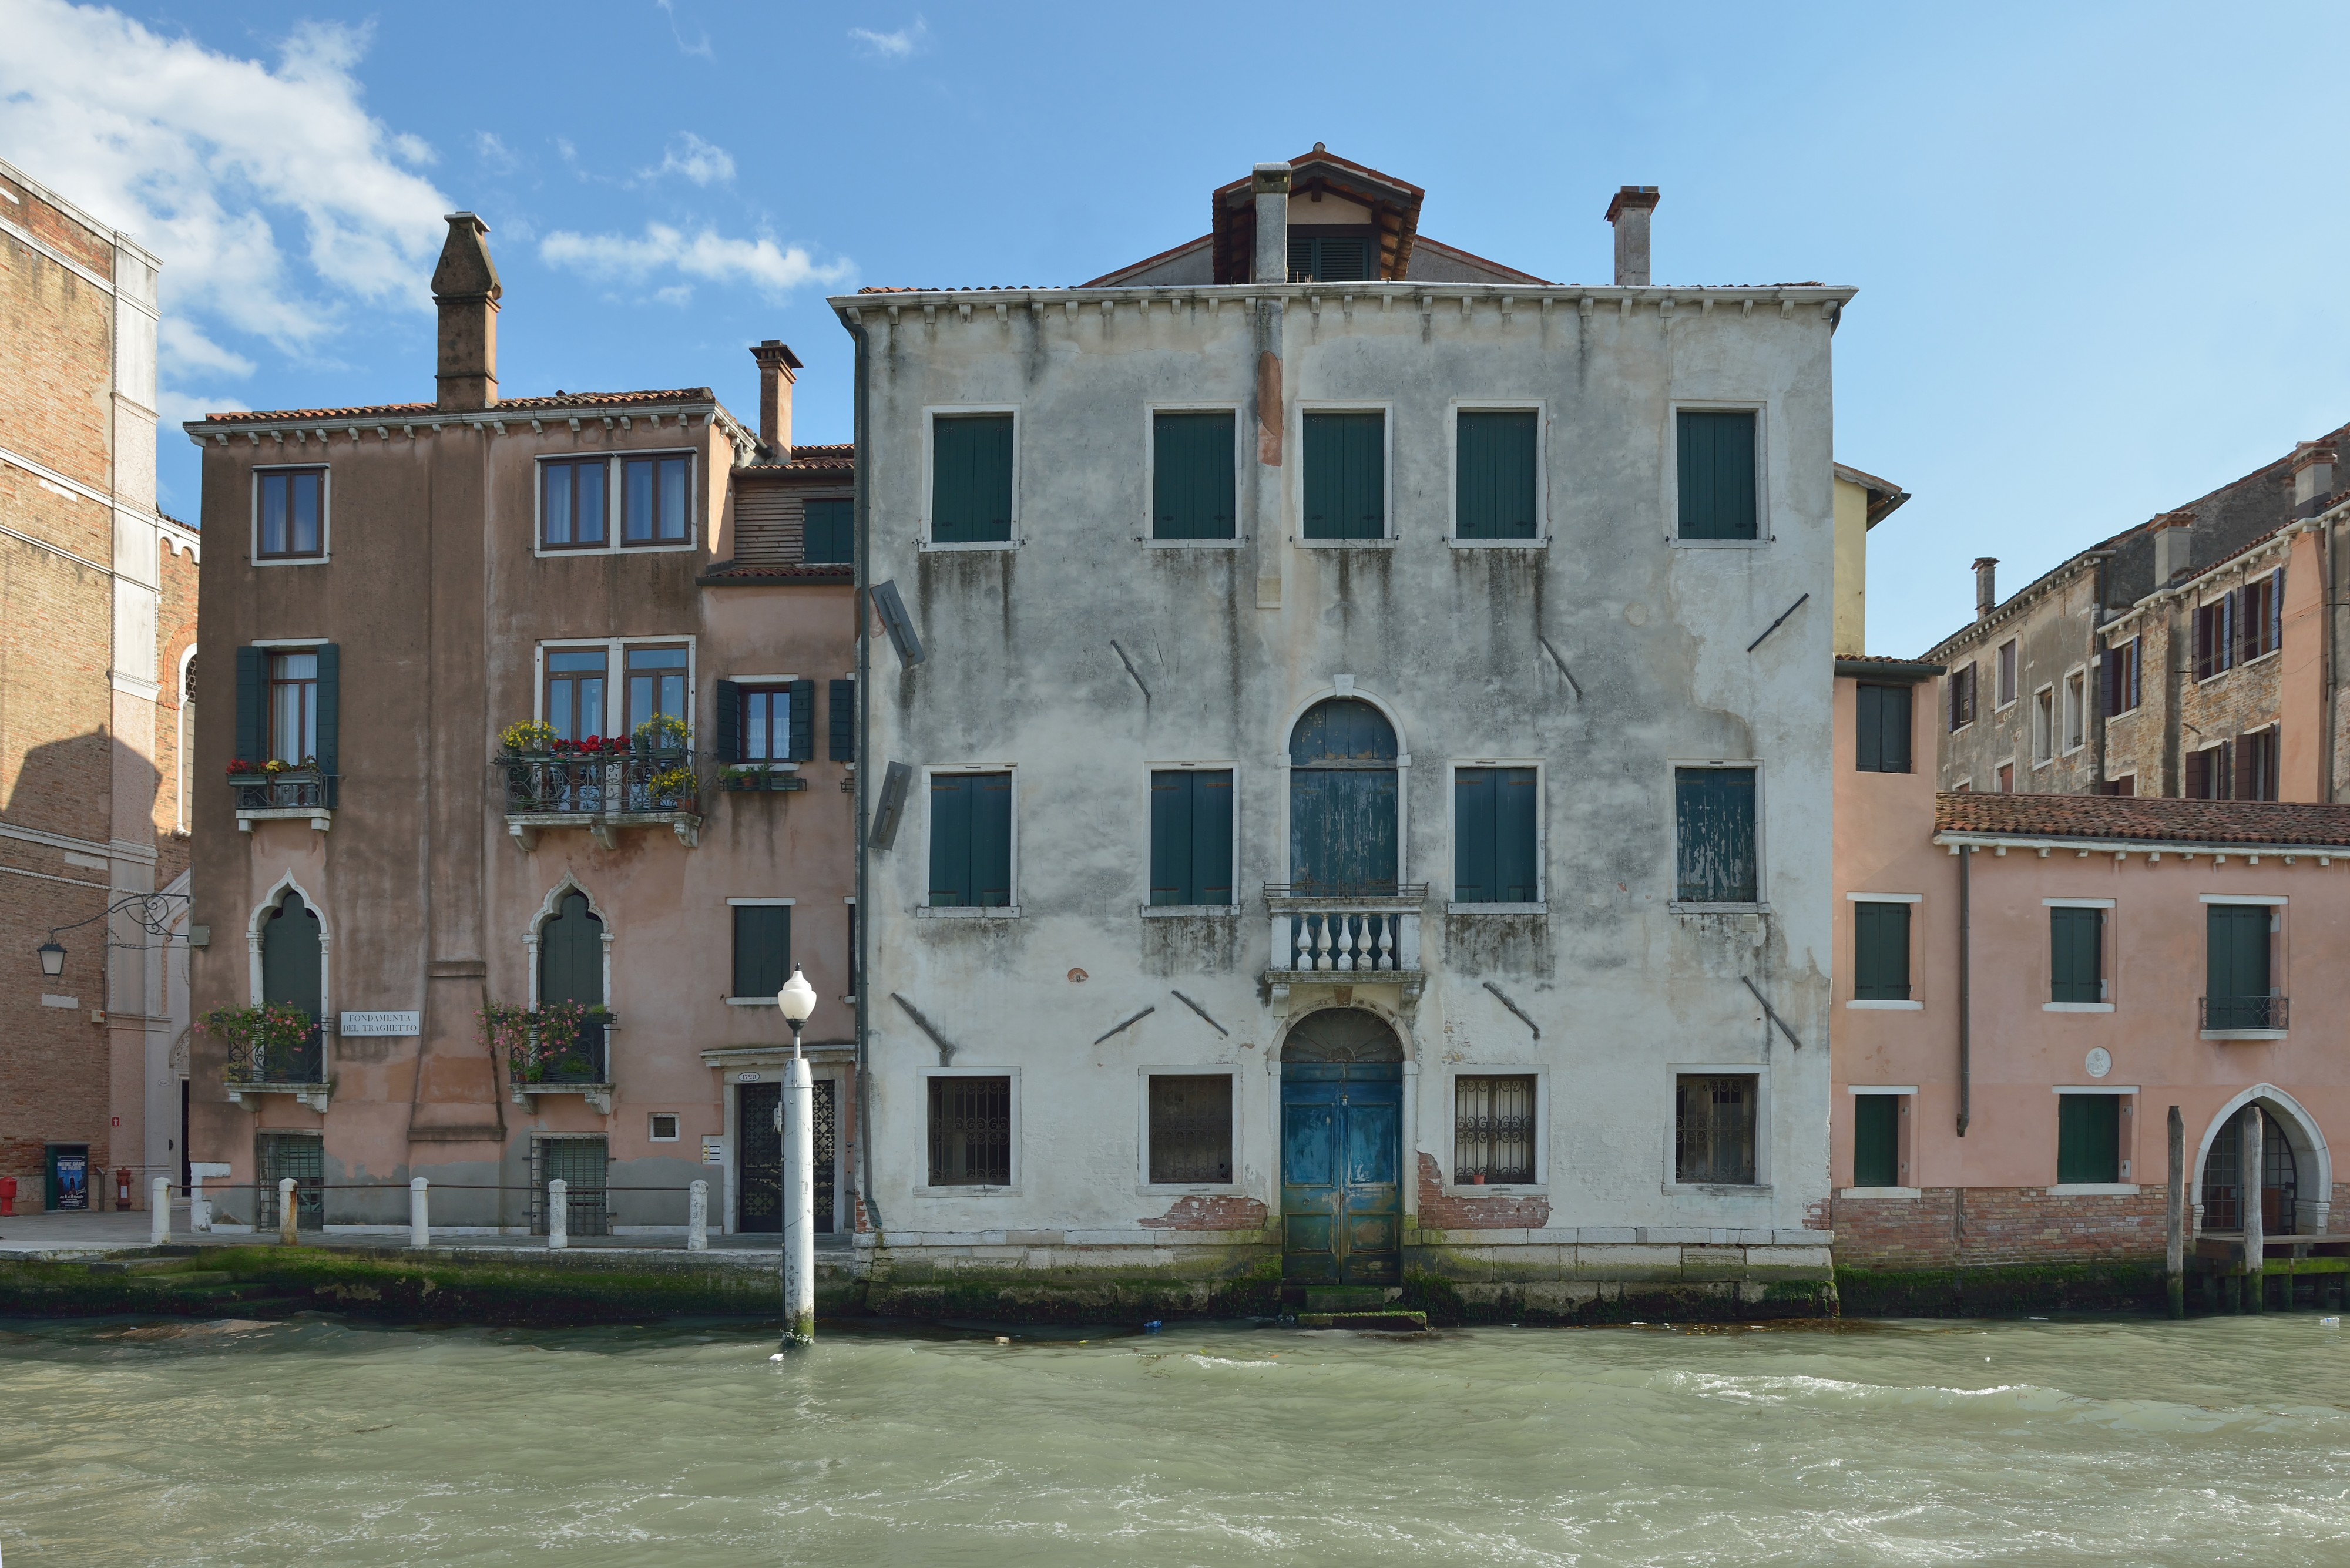 Casa in Salizada del Fontego dei Turchi Canal Grande Venezia